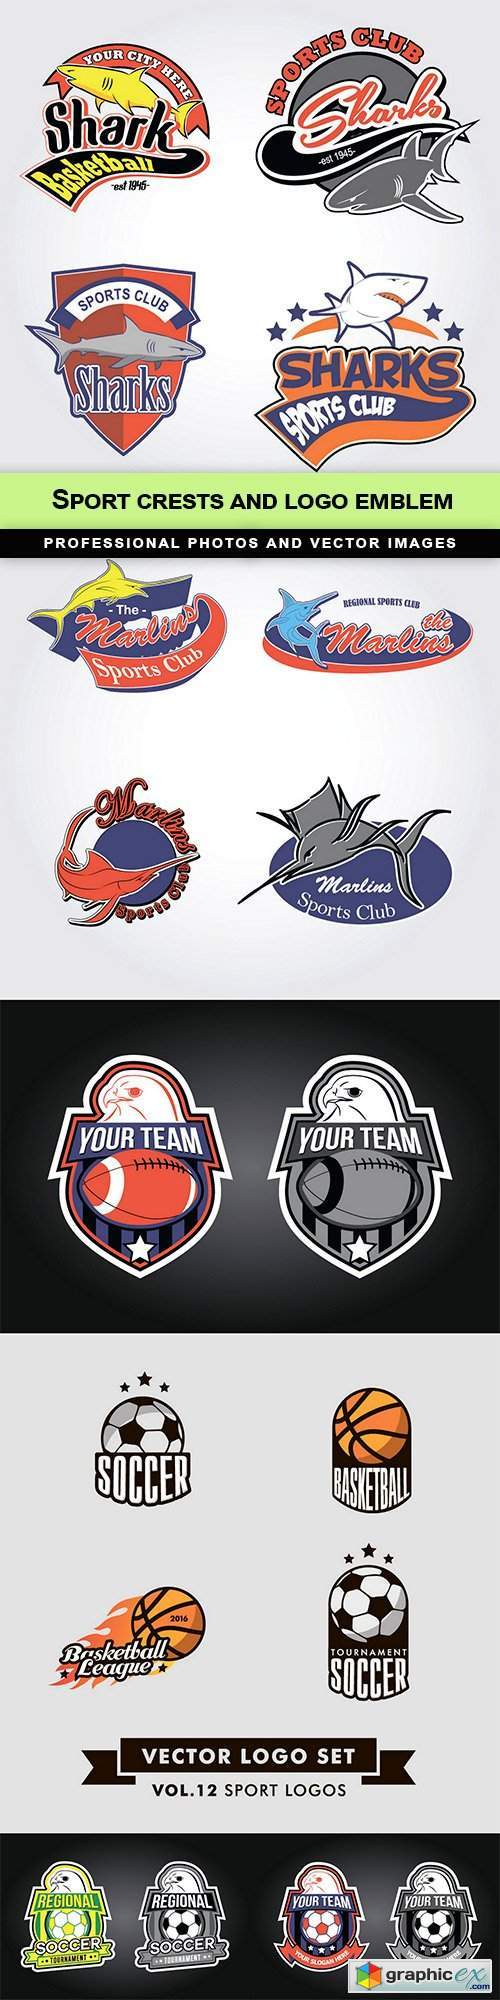 Sport crests and logo emblem - 6 EPS